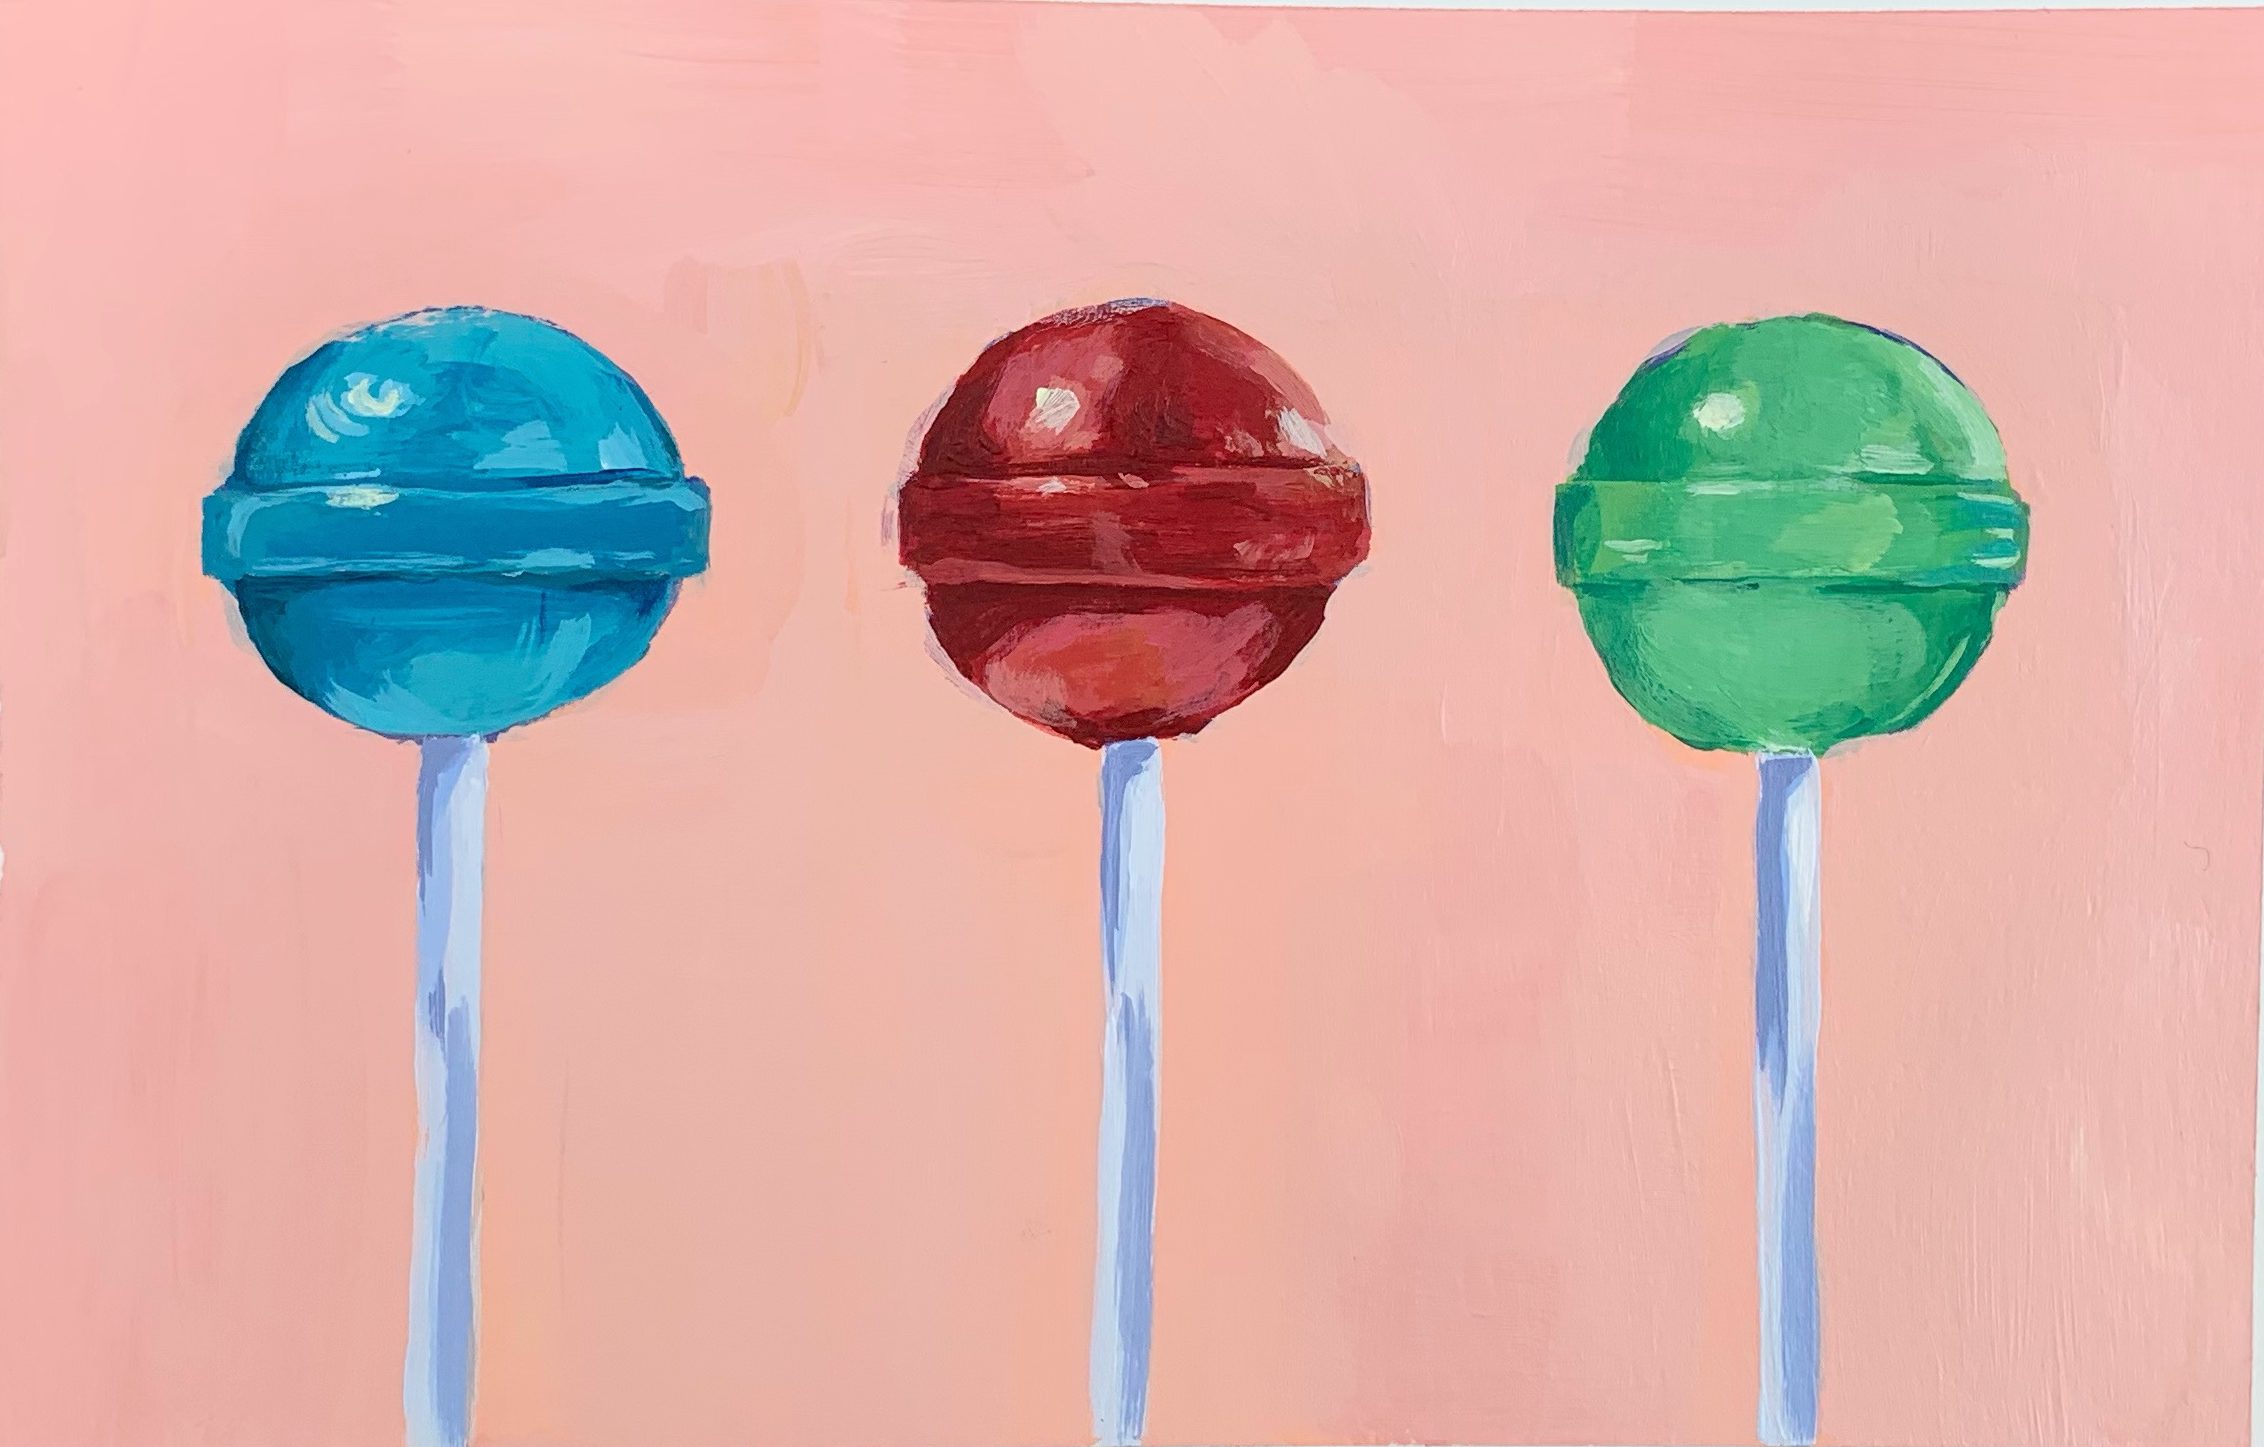 Lollipop paintings